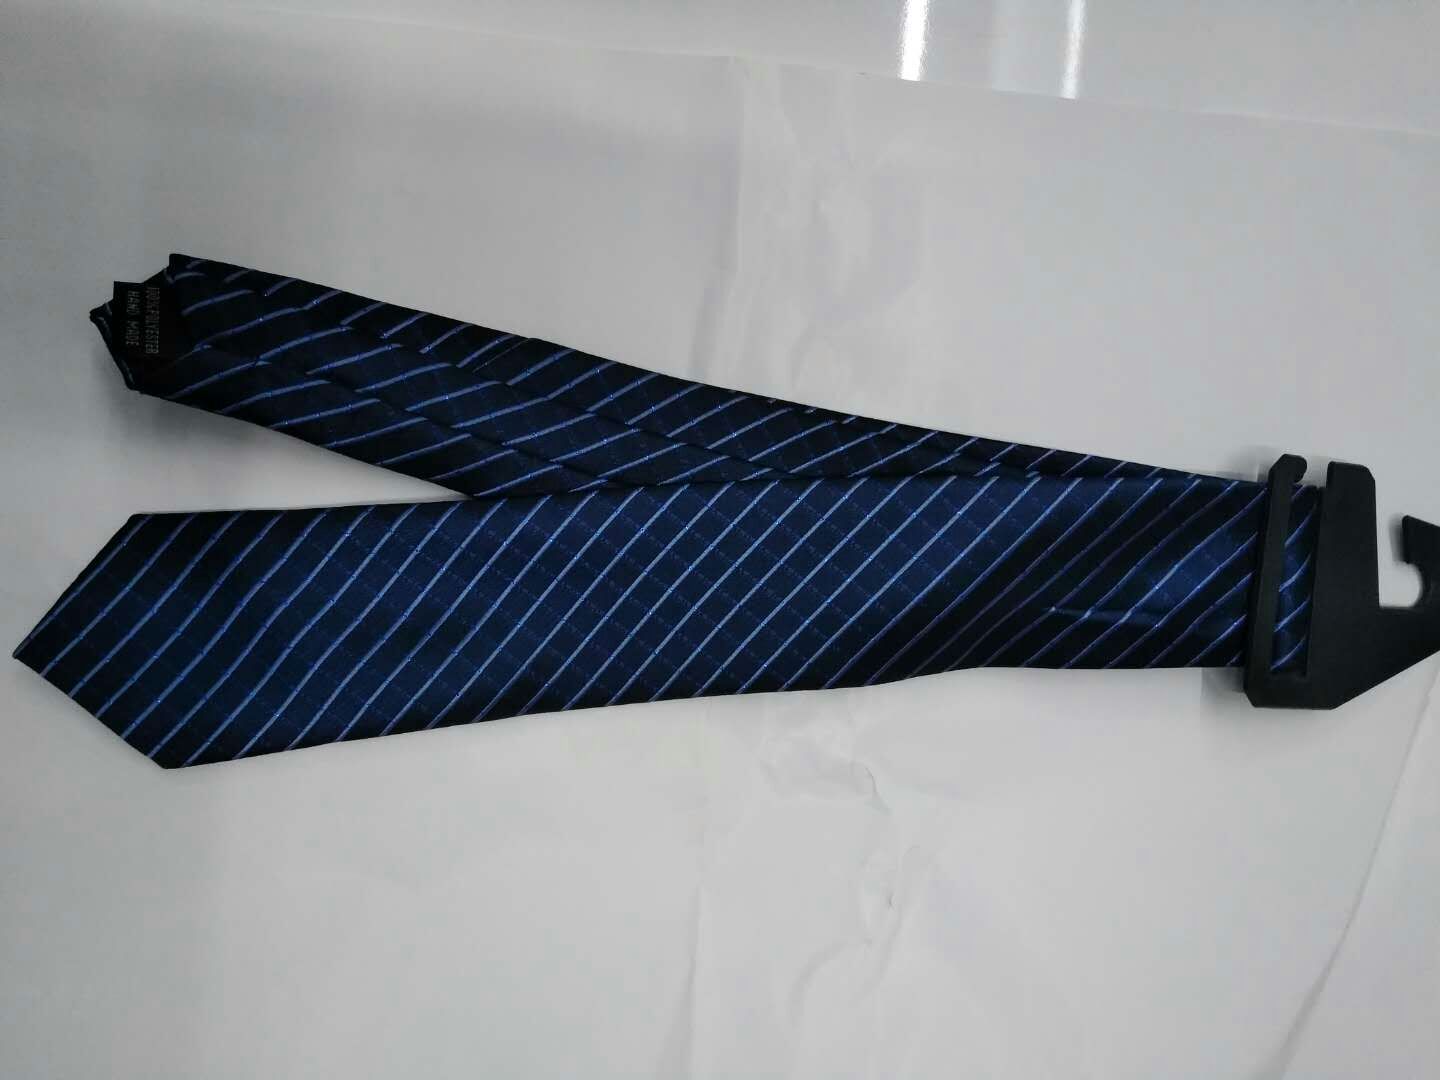 现货休闲领带定制厂家直销领带厂家休闲男士正装领带图